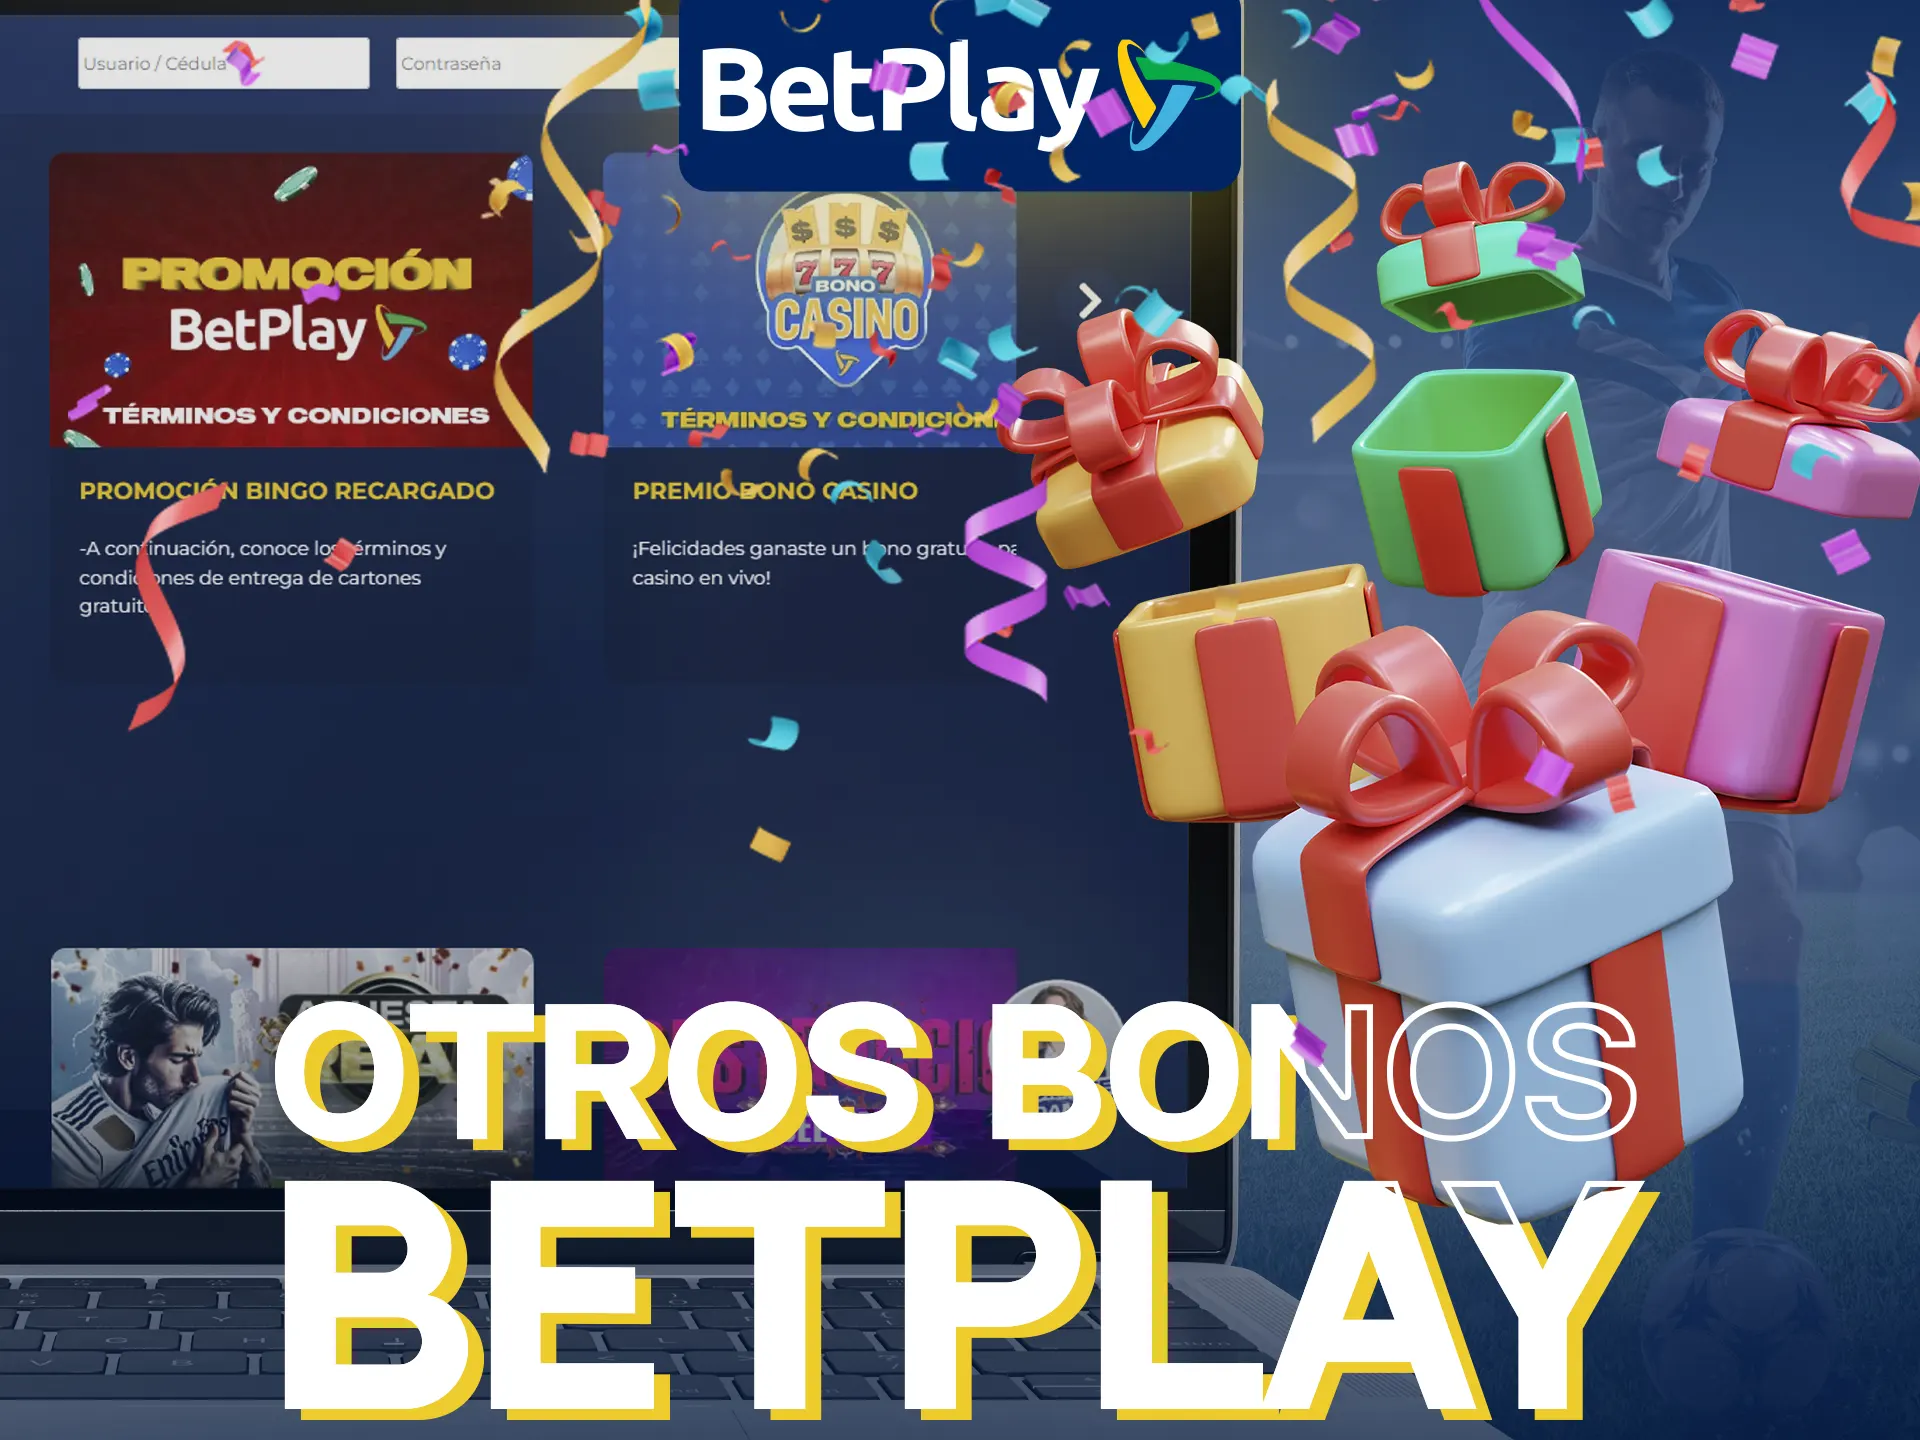 BetPlay ofrece muchos bonos para jugadores colombianos.